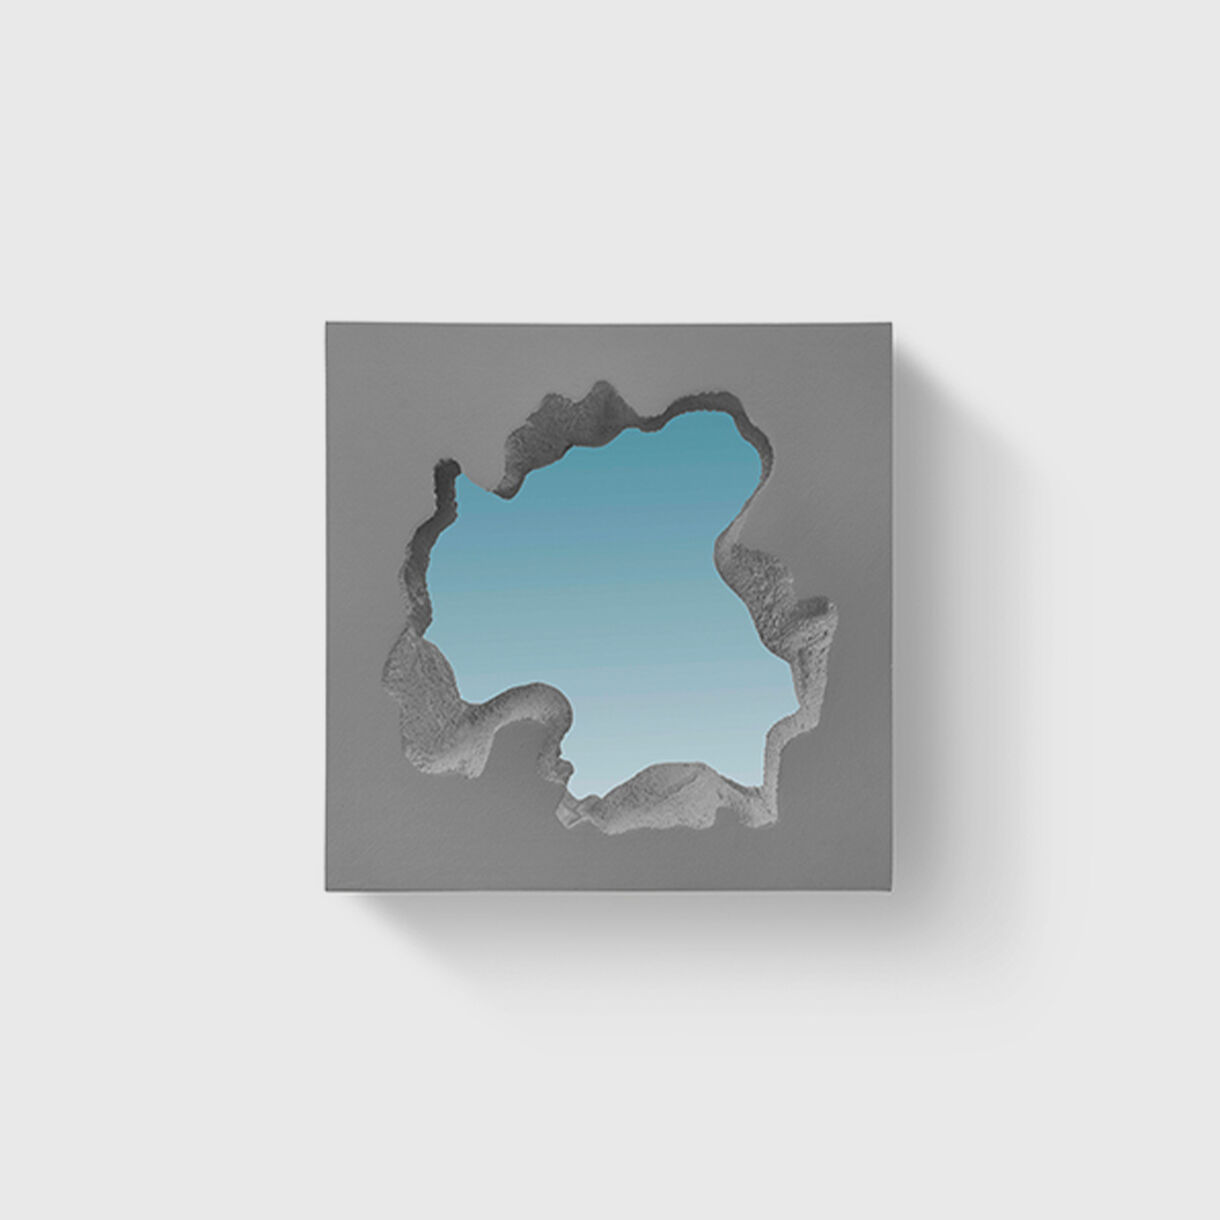 Broken Square Mirror, Grey